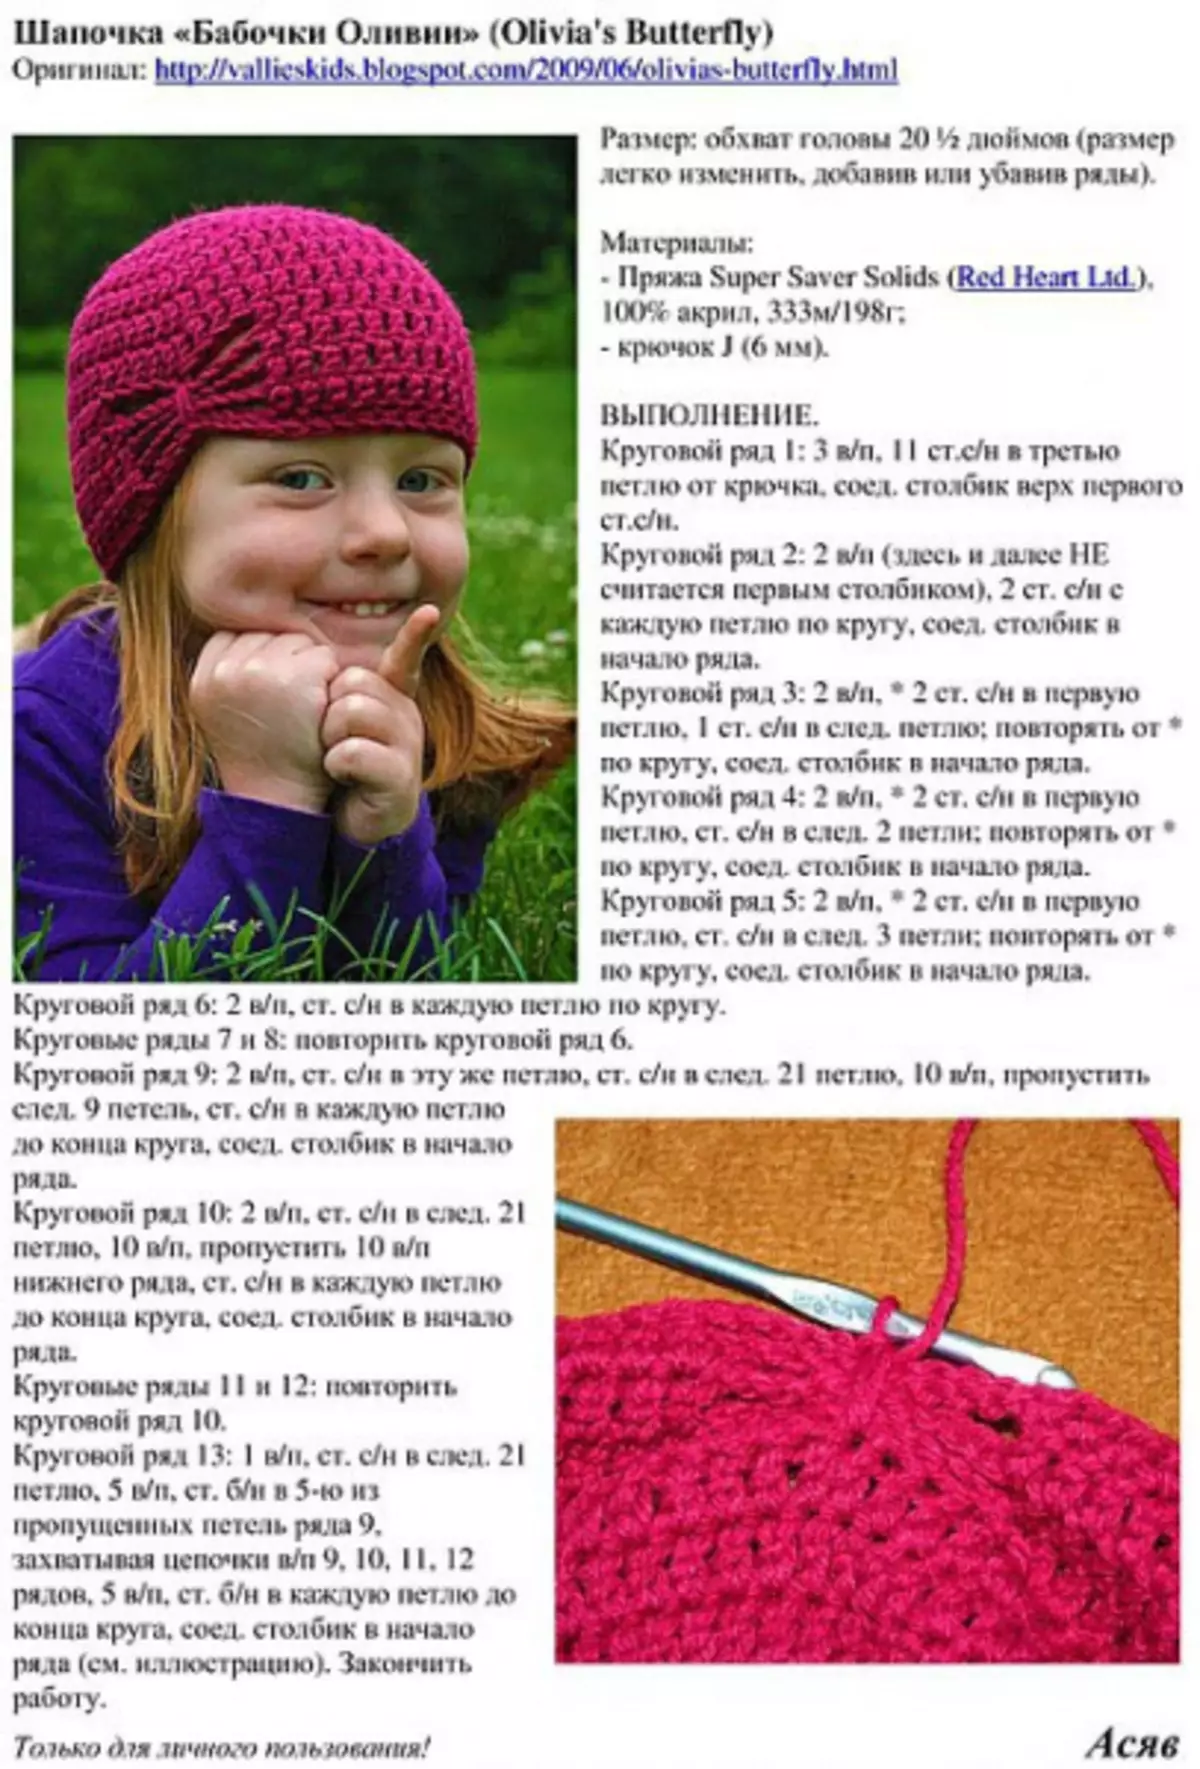 Crochet தொடர்பான பட்டாம்பூச்சிகள் - சிறந்த விளக்கம் திட்டங்கள் மற்றும் மாஸ்டர் வகுப்புகள்